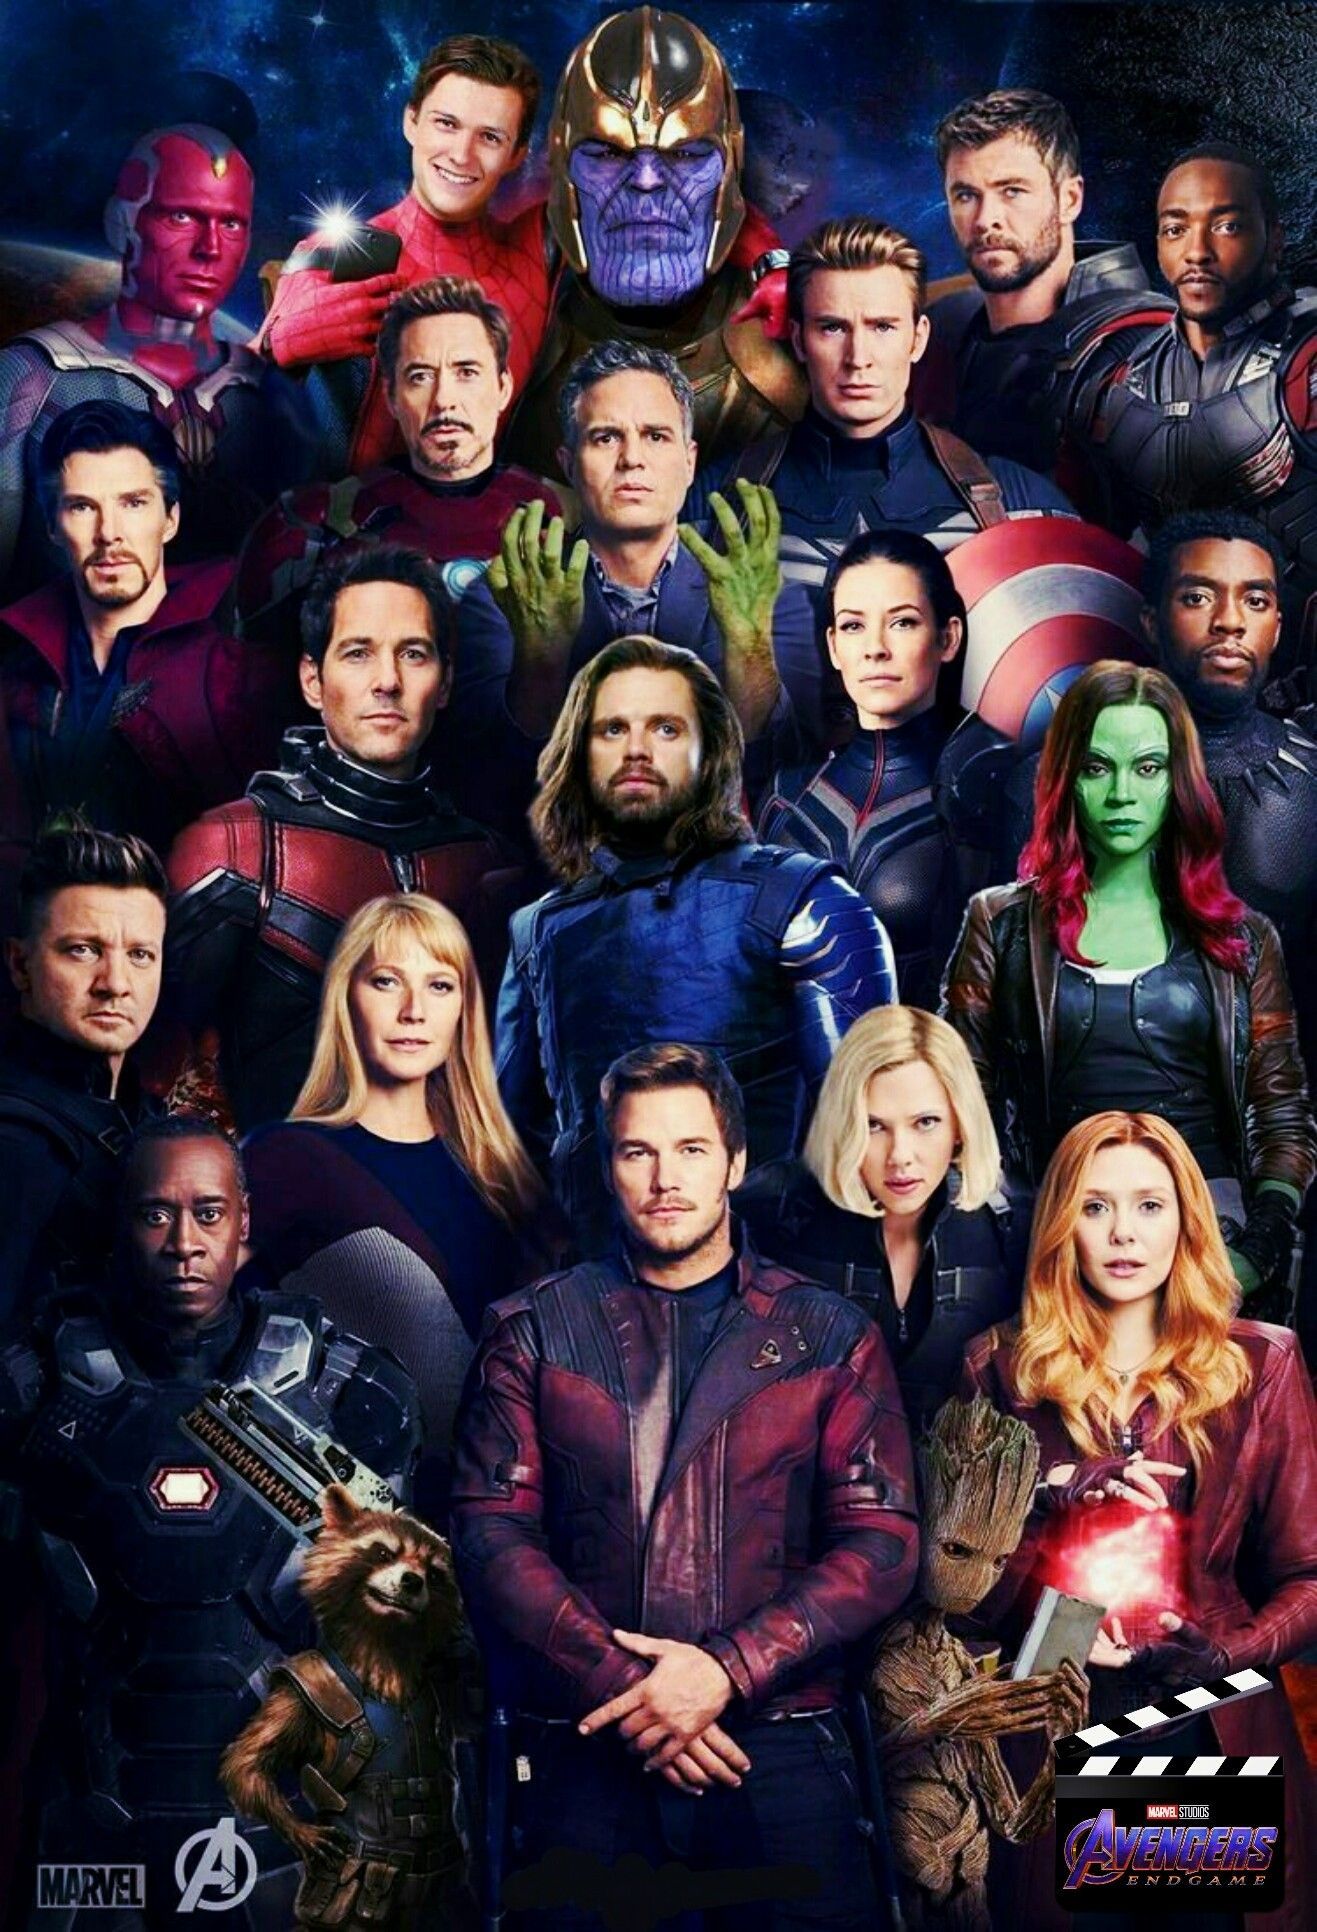 Avengers Endgame Poster #avengers #marvel. Marvel avengers movies, Marvel superhero posters, Marvel superheroes